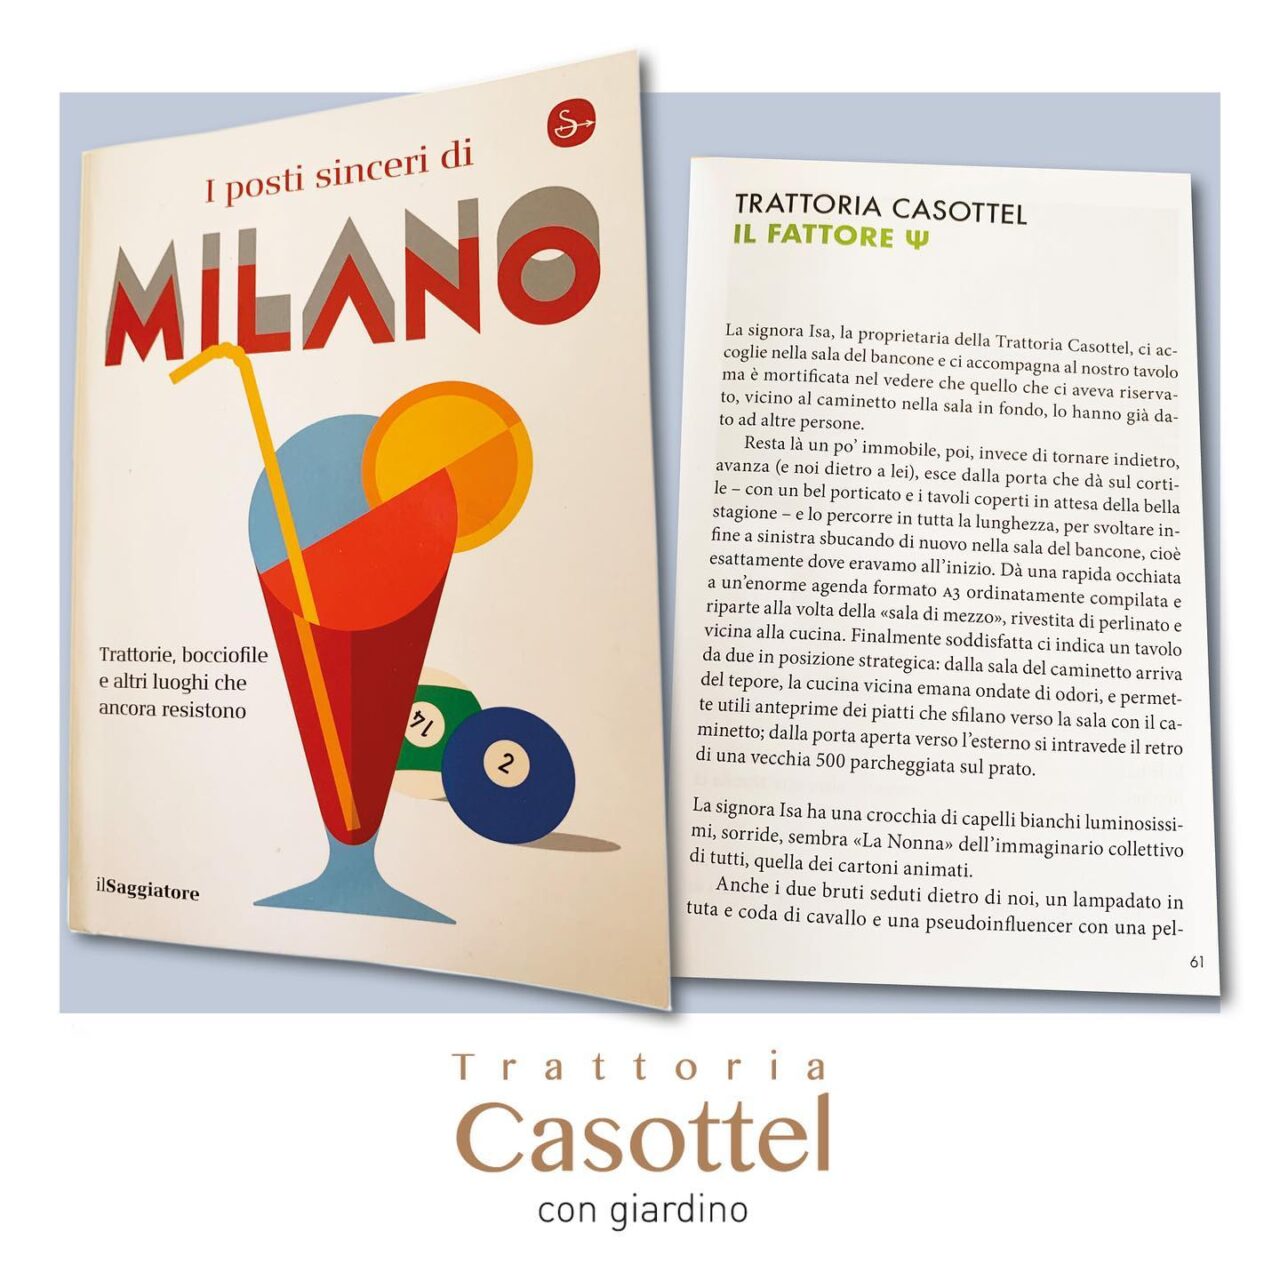 I posti sinceri di Milano Casottel 1